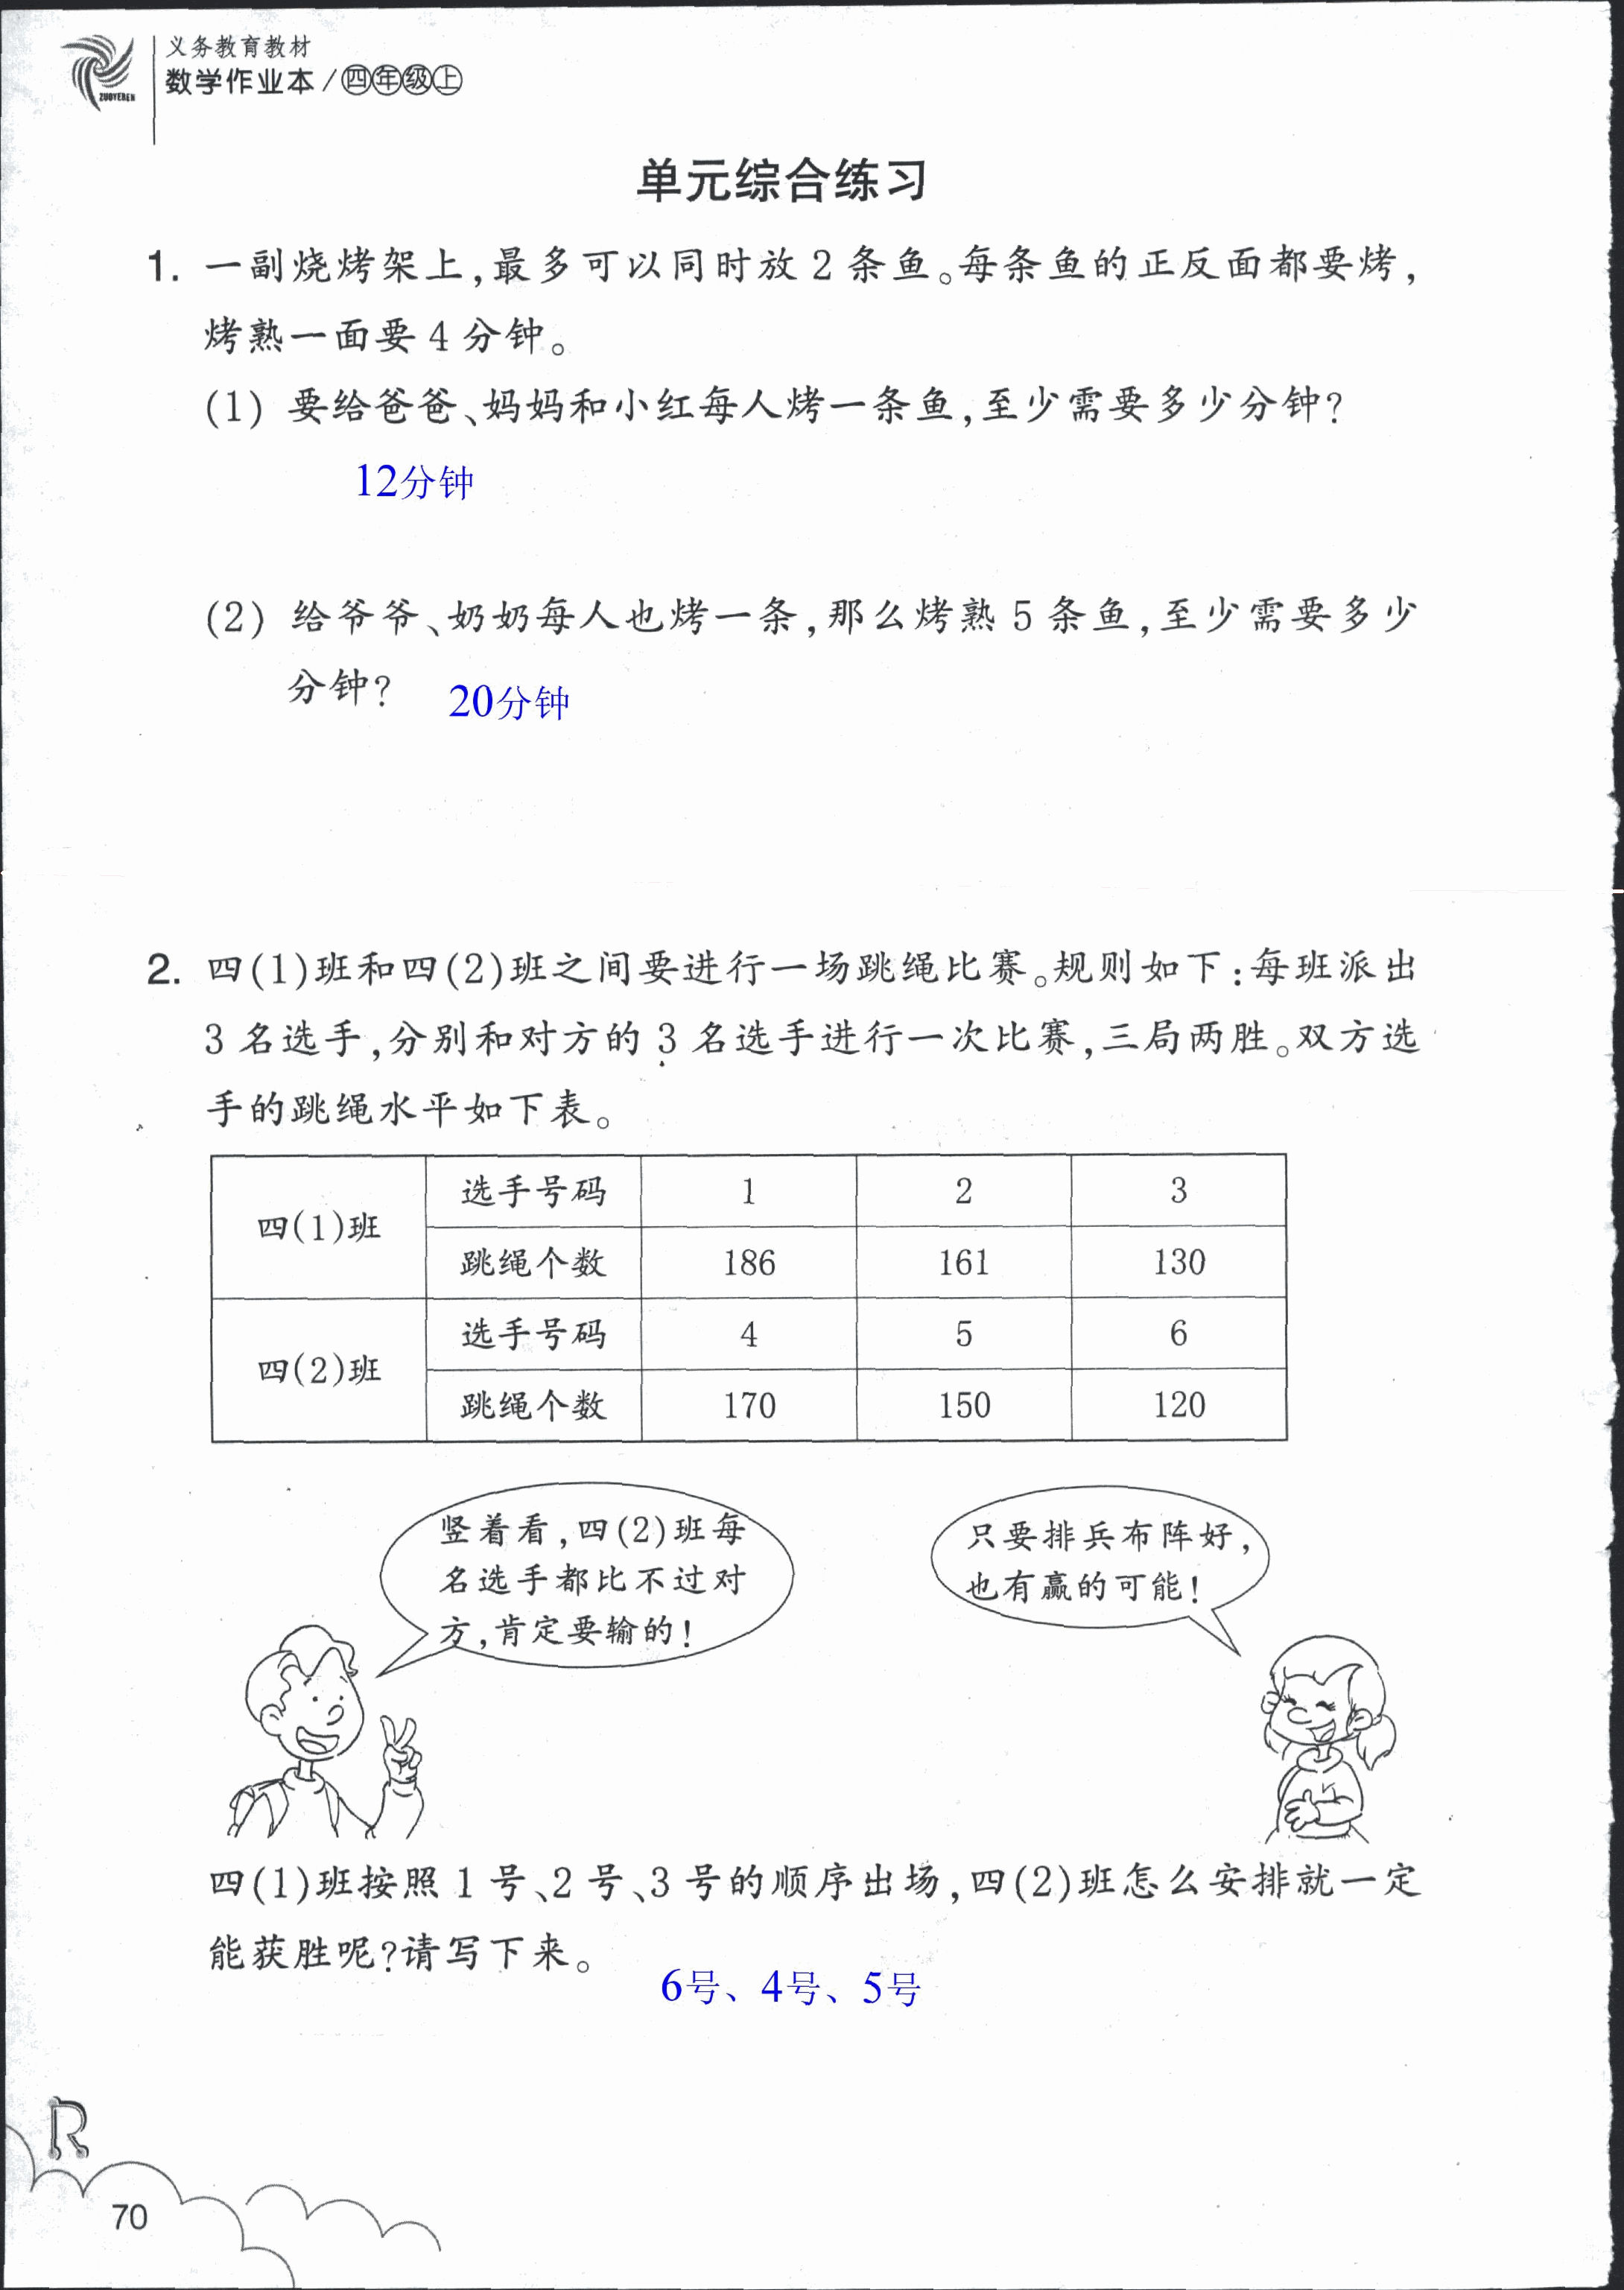 数学作业本 第70页